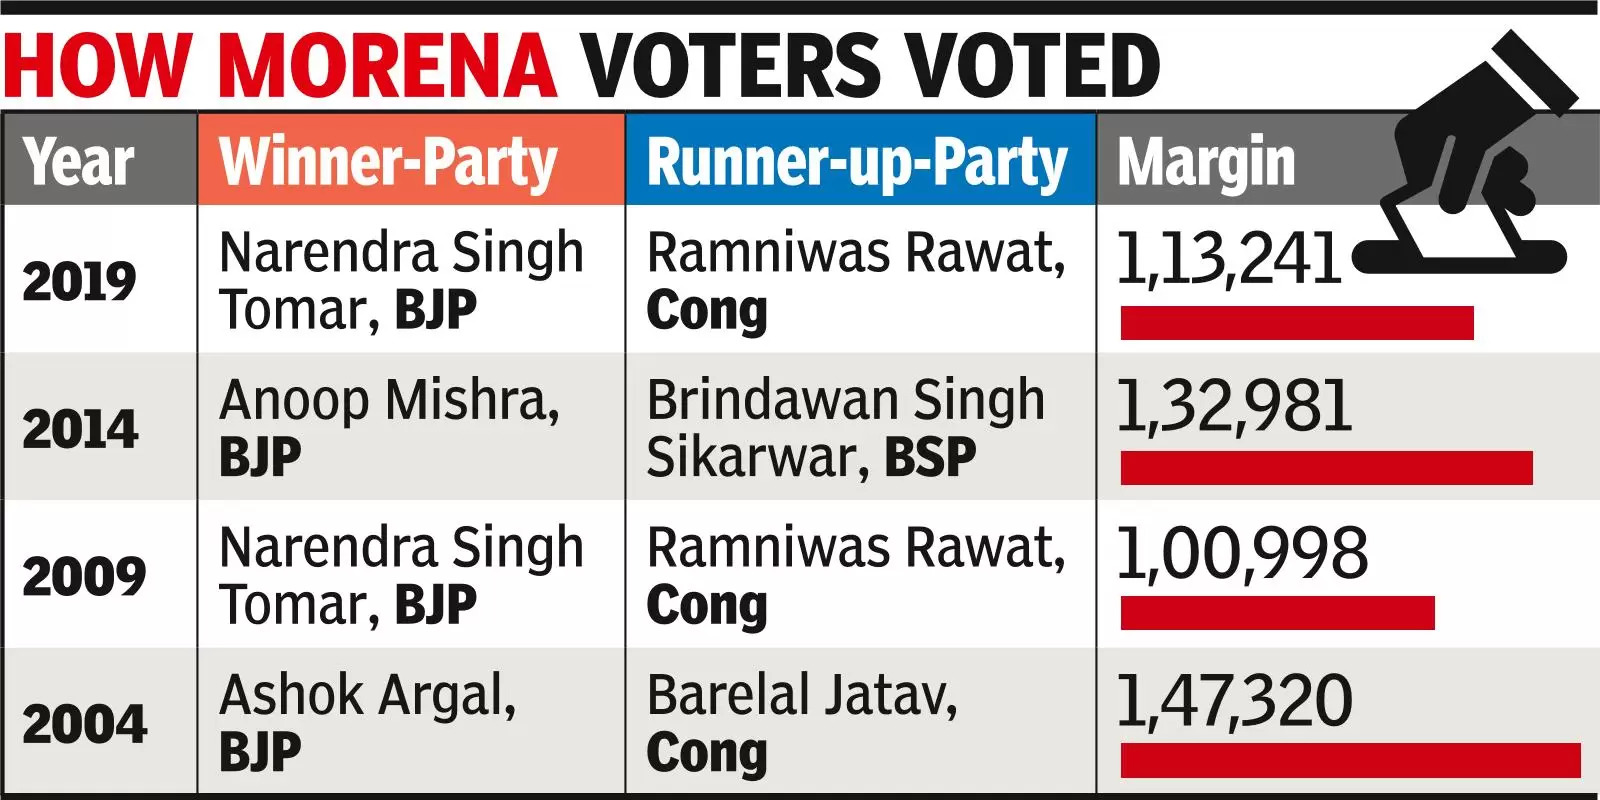 Morena: BSP spices up 2-way contest between BJP & Cong